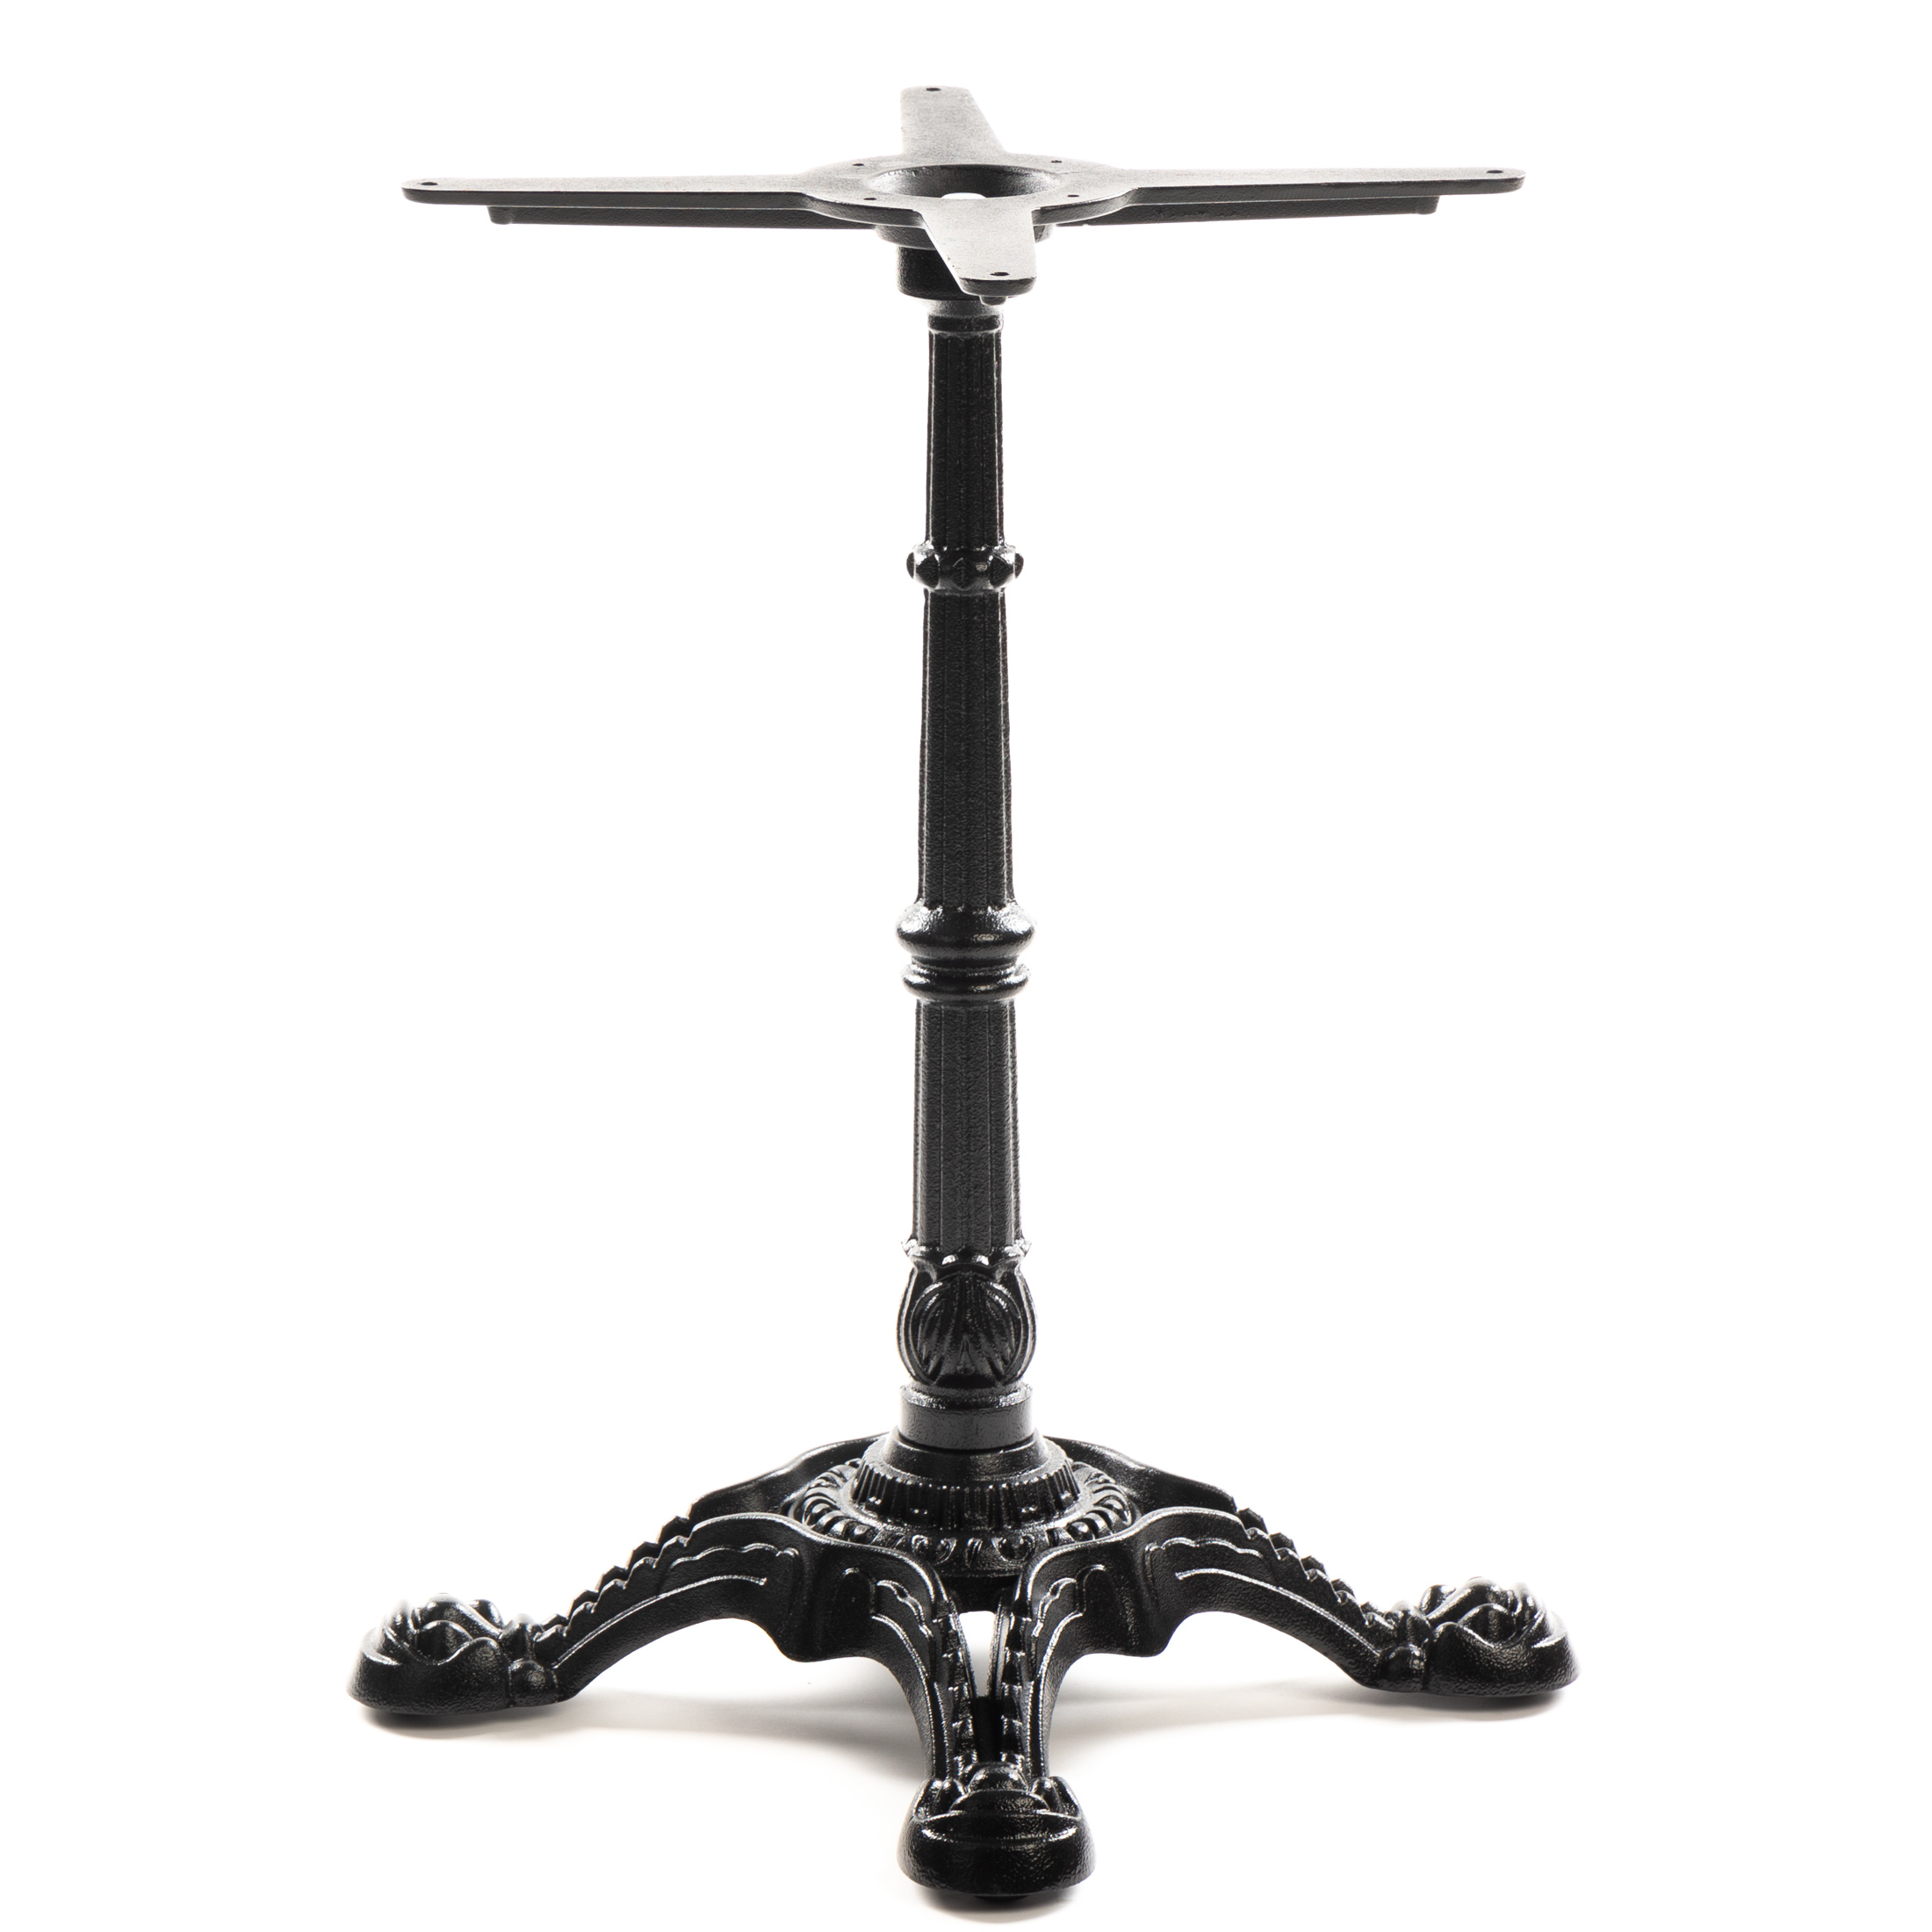 Premium Tischgestell PJ7017 aus Gusseisen, schwarz, antikes Design, 3-zehig